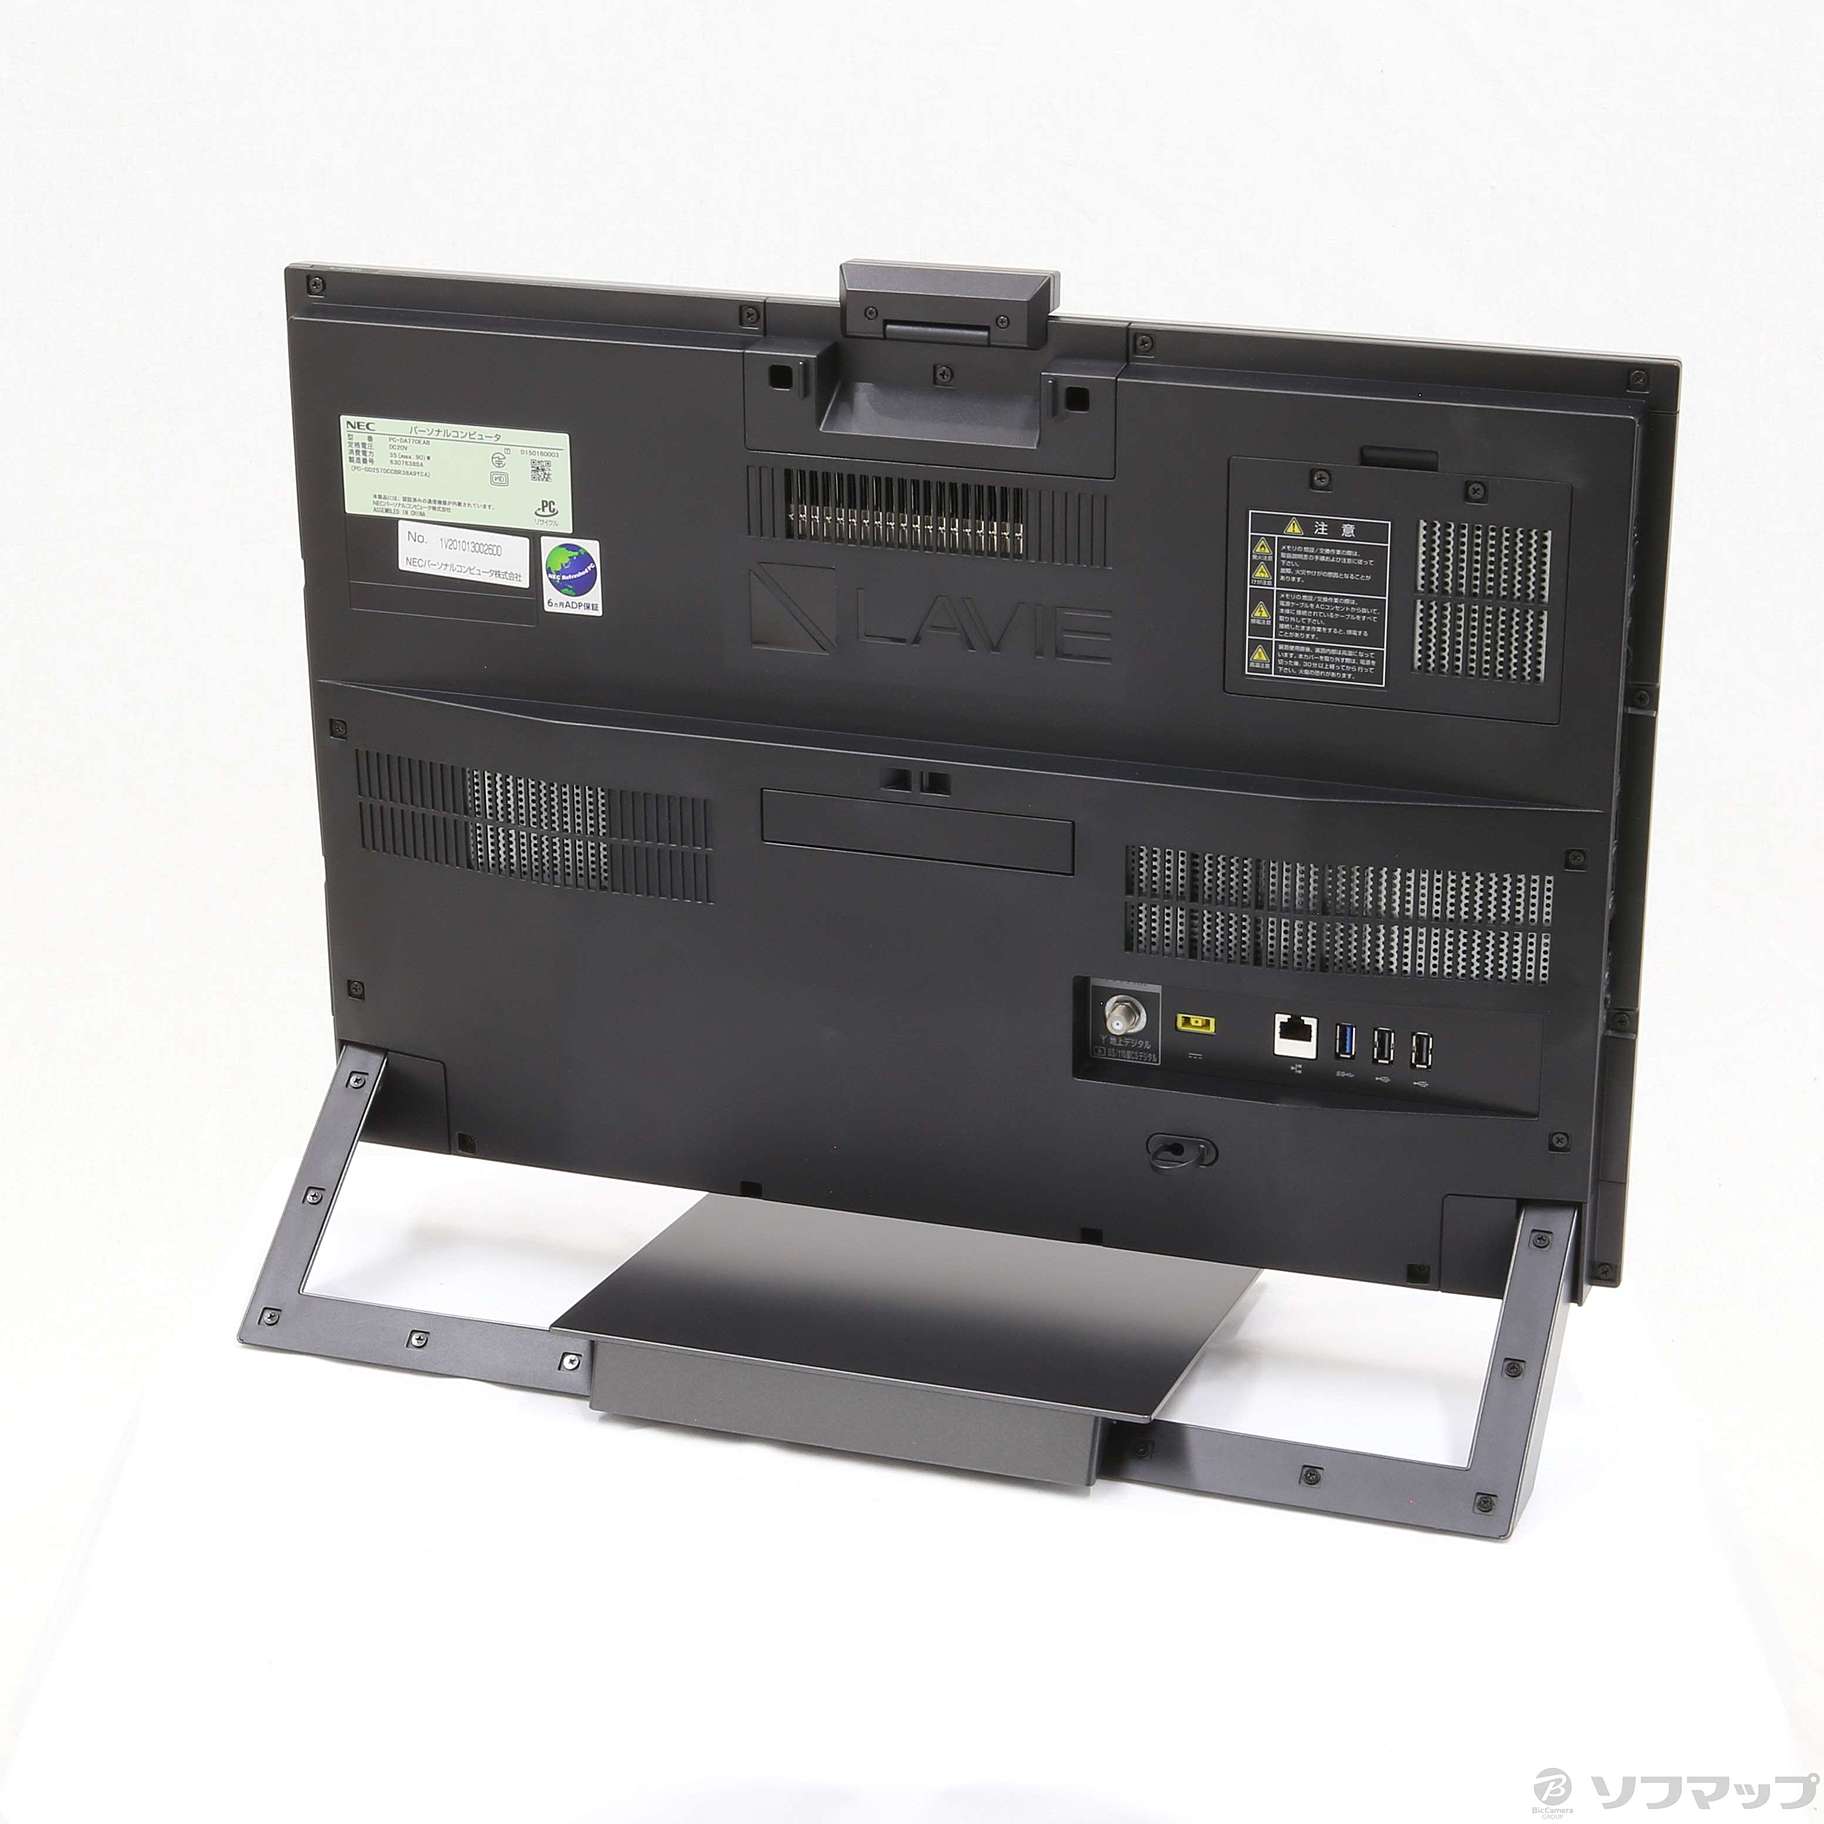 NEC LaVie Desk PC-DA770EAB デスクトップPC パソコン プレミア商品